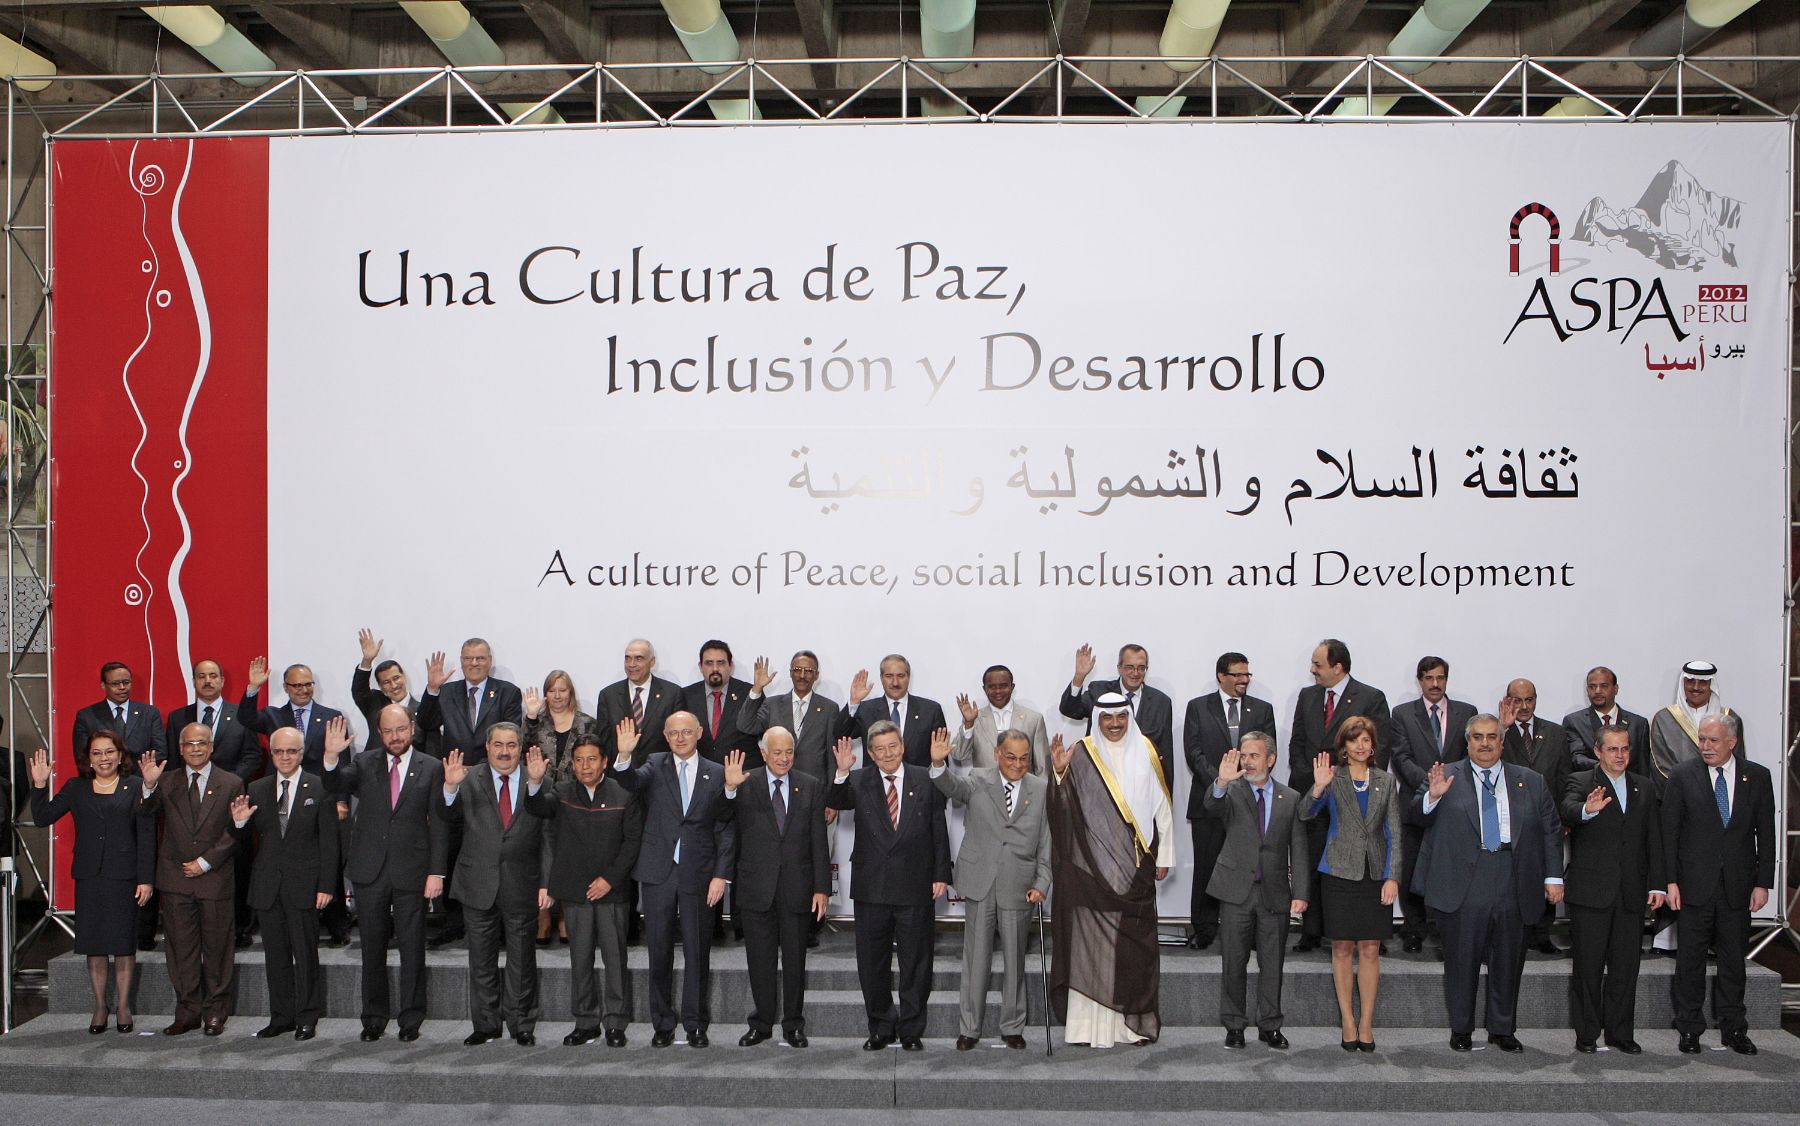 Foto Oficial de Cancilleres en la III Cumbre de América del Sur y Países Arabes (ASPA).Foto: ANDINA/Carlos Lezama.